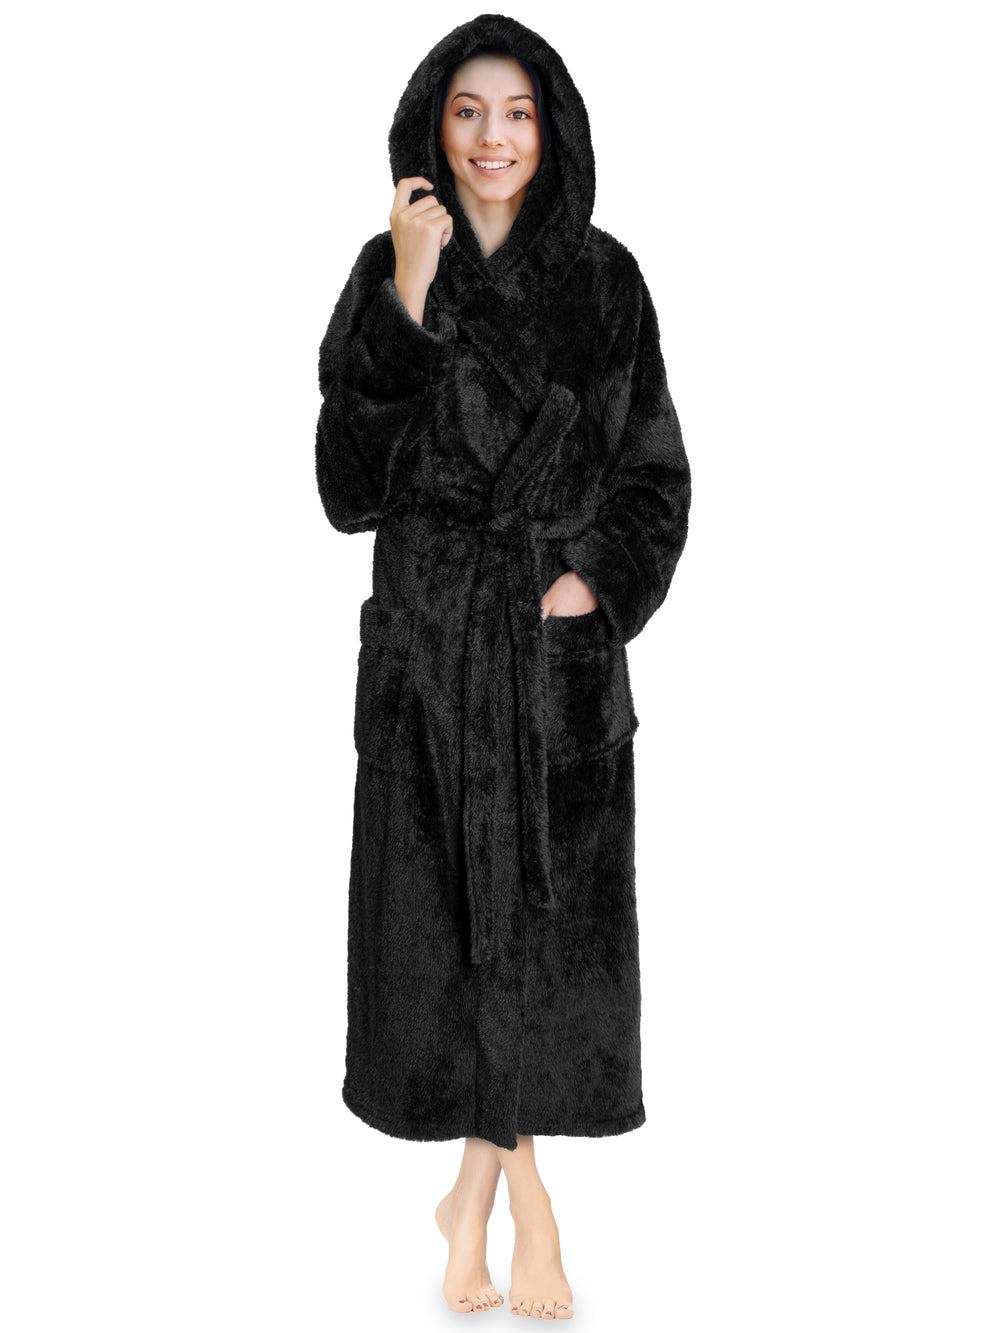 VEKDONE Women's Fuzzy Fleece Hooded Bathrobe - Sherpa-Lined Spa Robe  Dressing Gown Plus Size